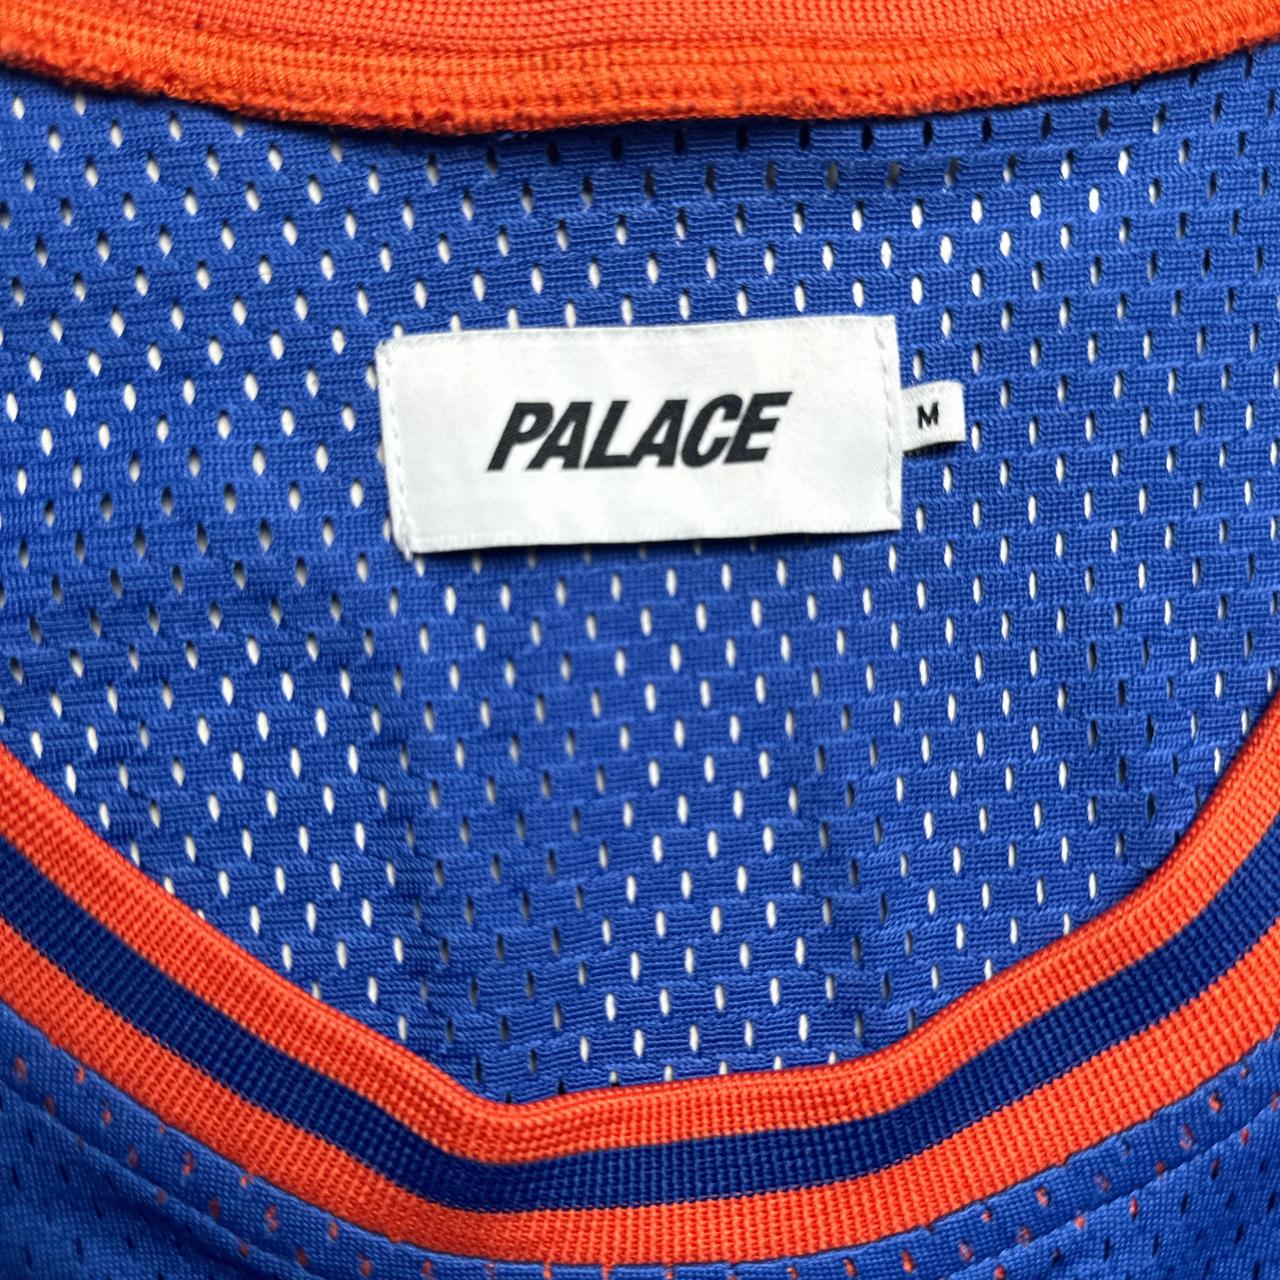 Palace MVP Basketball Jersey Vest Blue and Orange